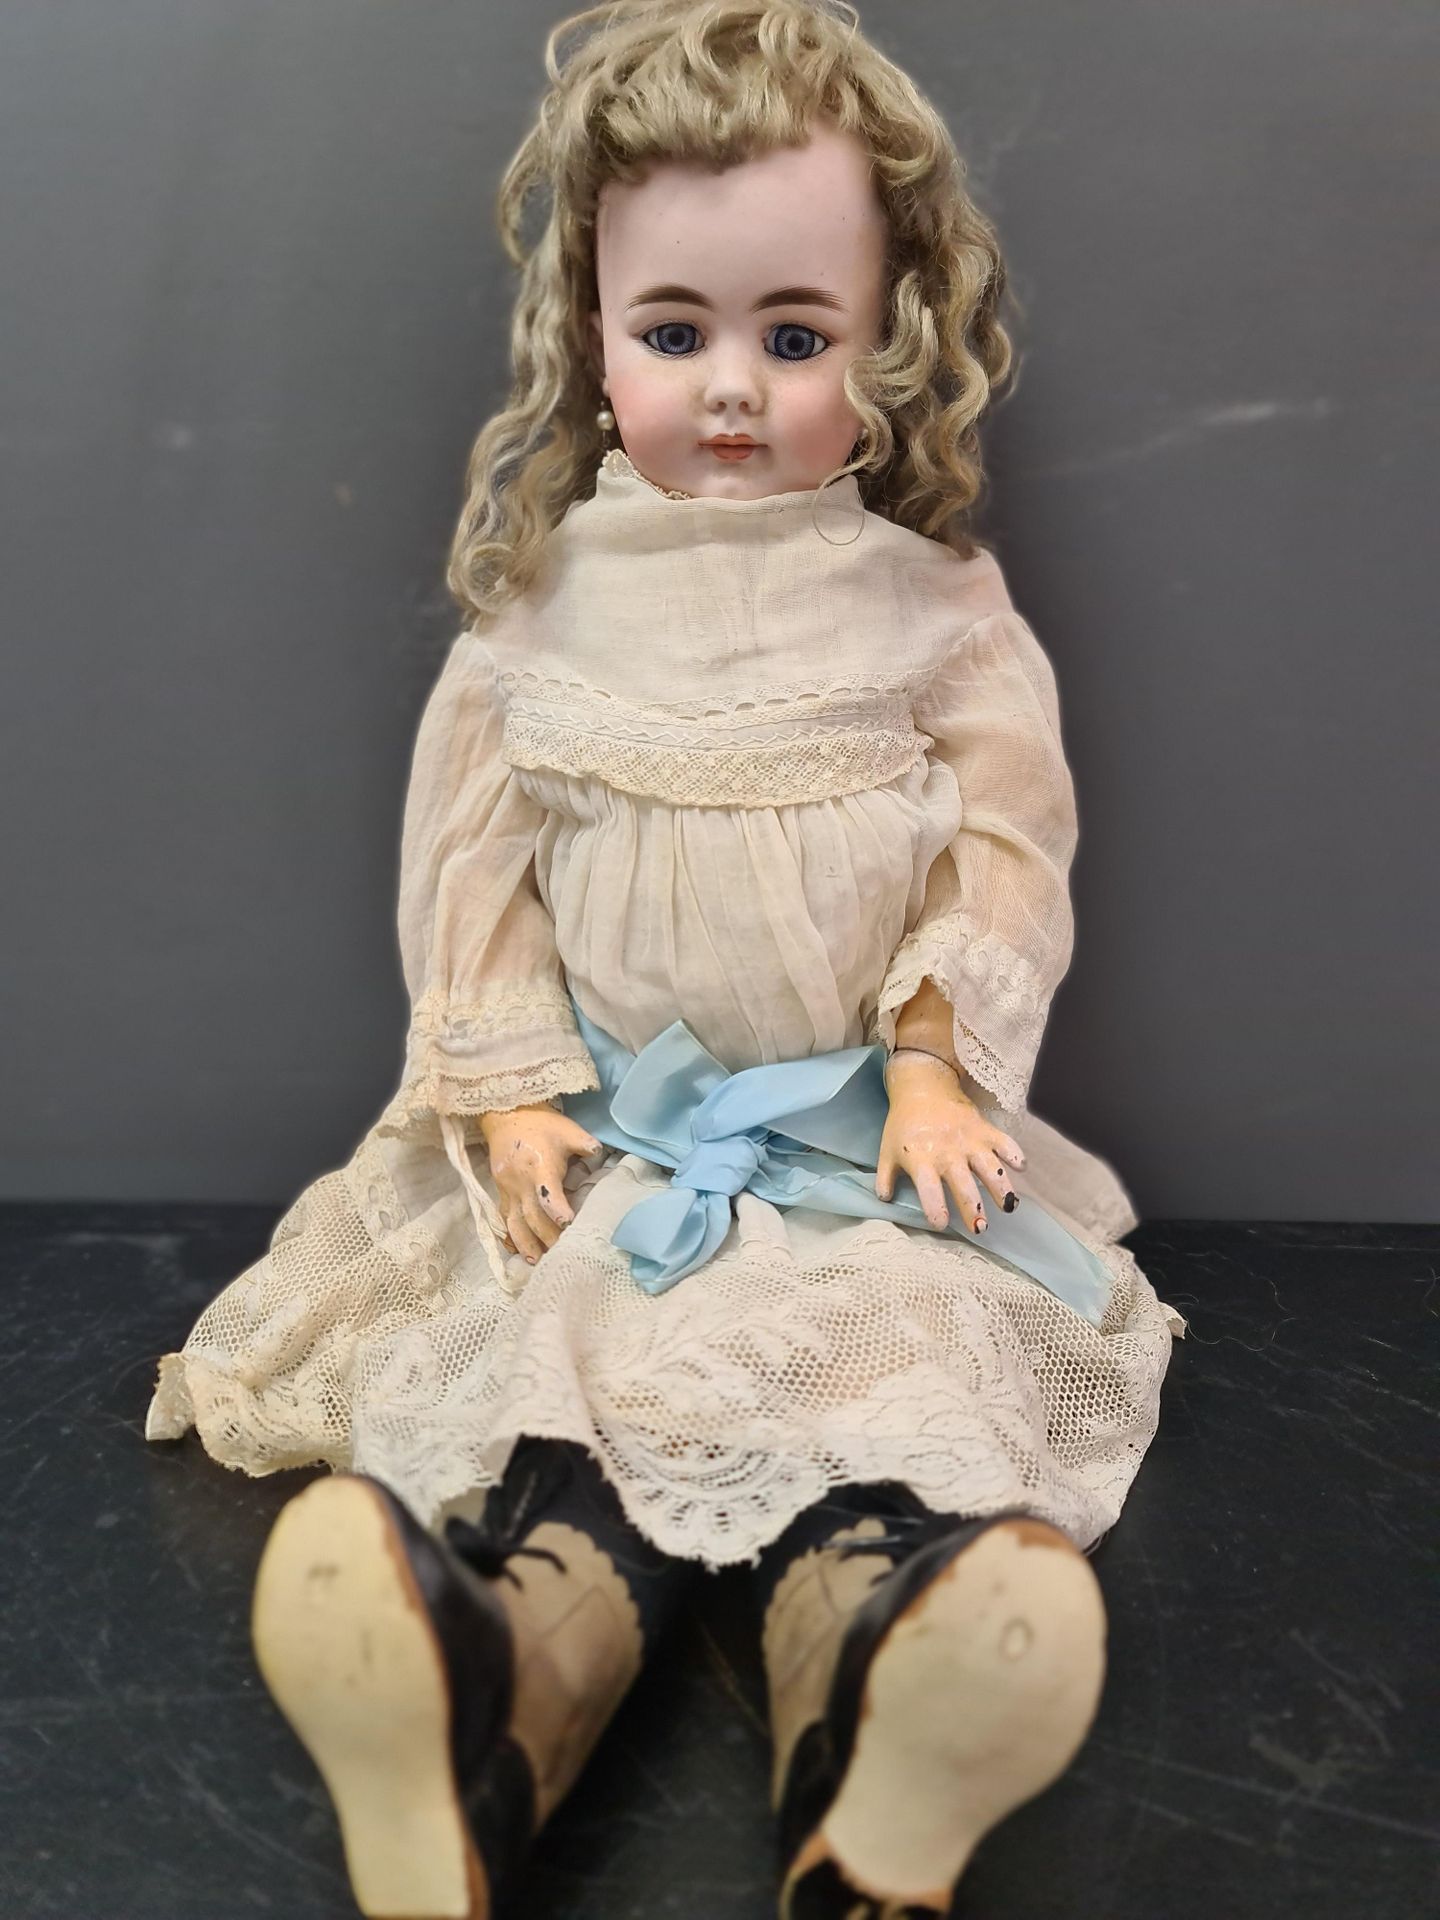 Null 德国娃娃，头部是双色的。闭口不言。固定蓝眼睛，标有DEP SIMON & HALBIG。铰接式的木头和构件的身体。高度：58厘米。



Duitse&hellip;